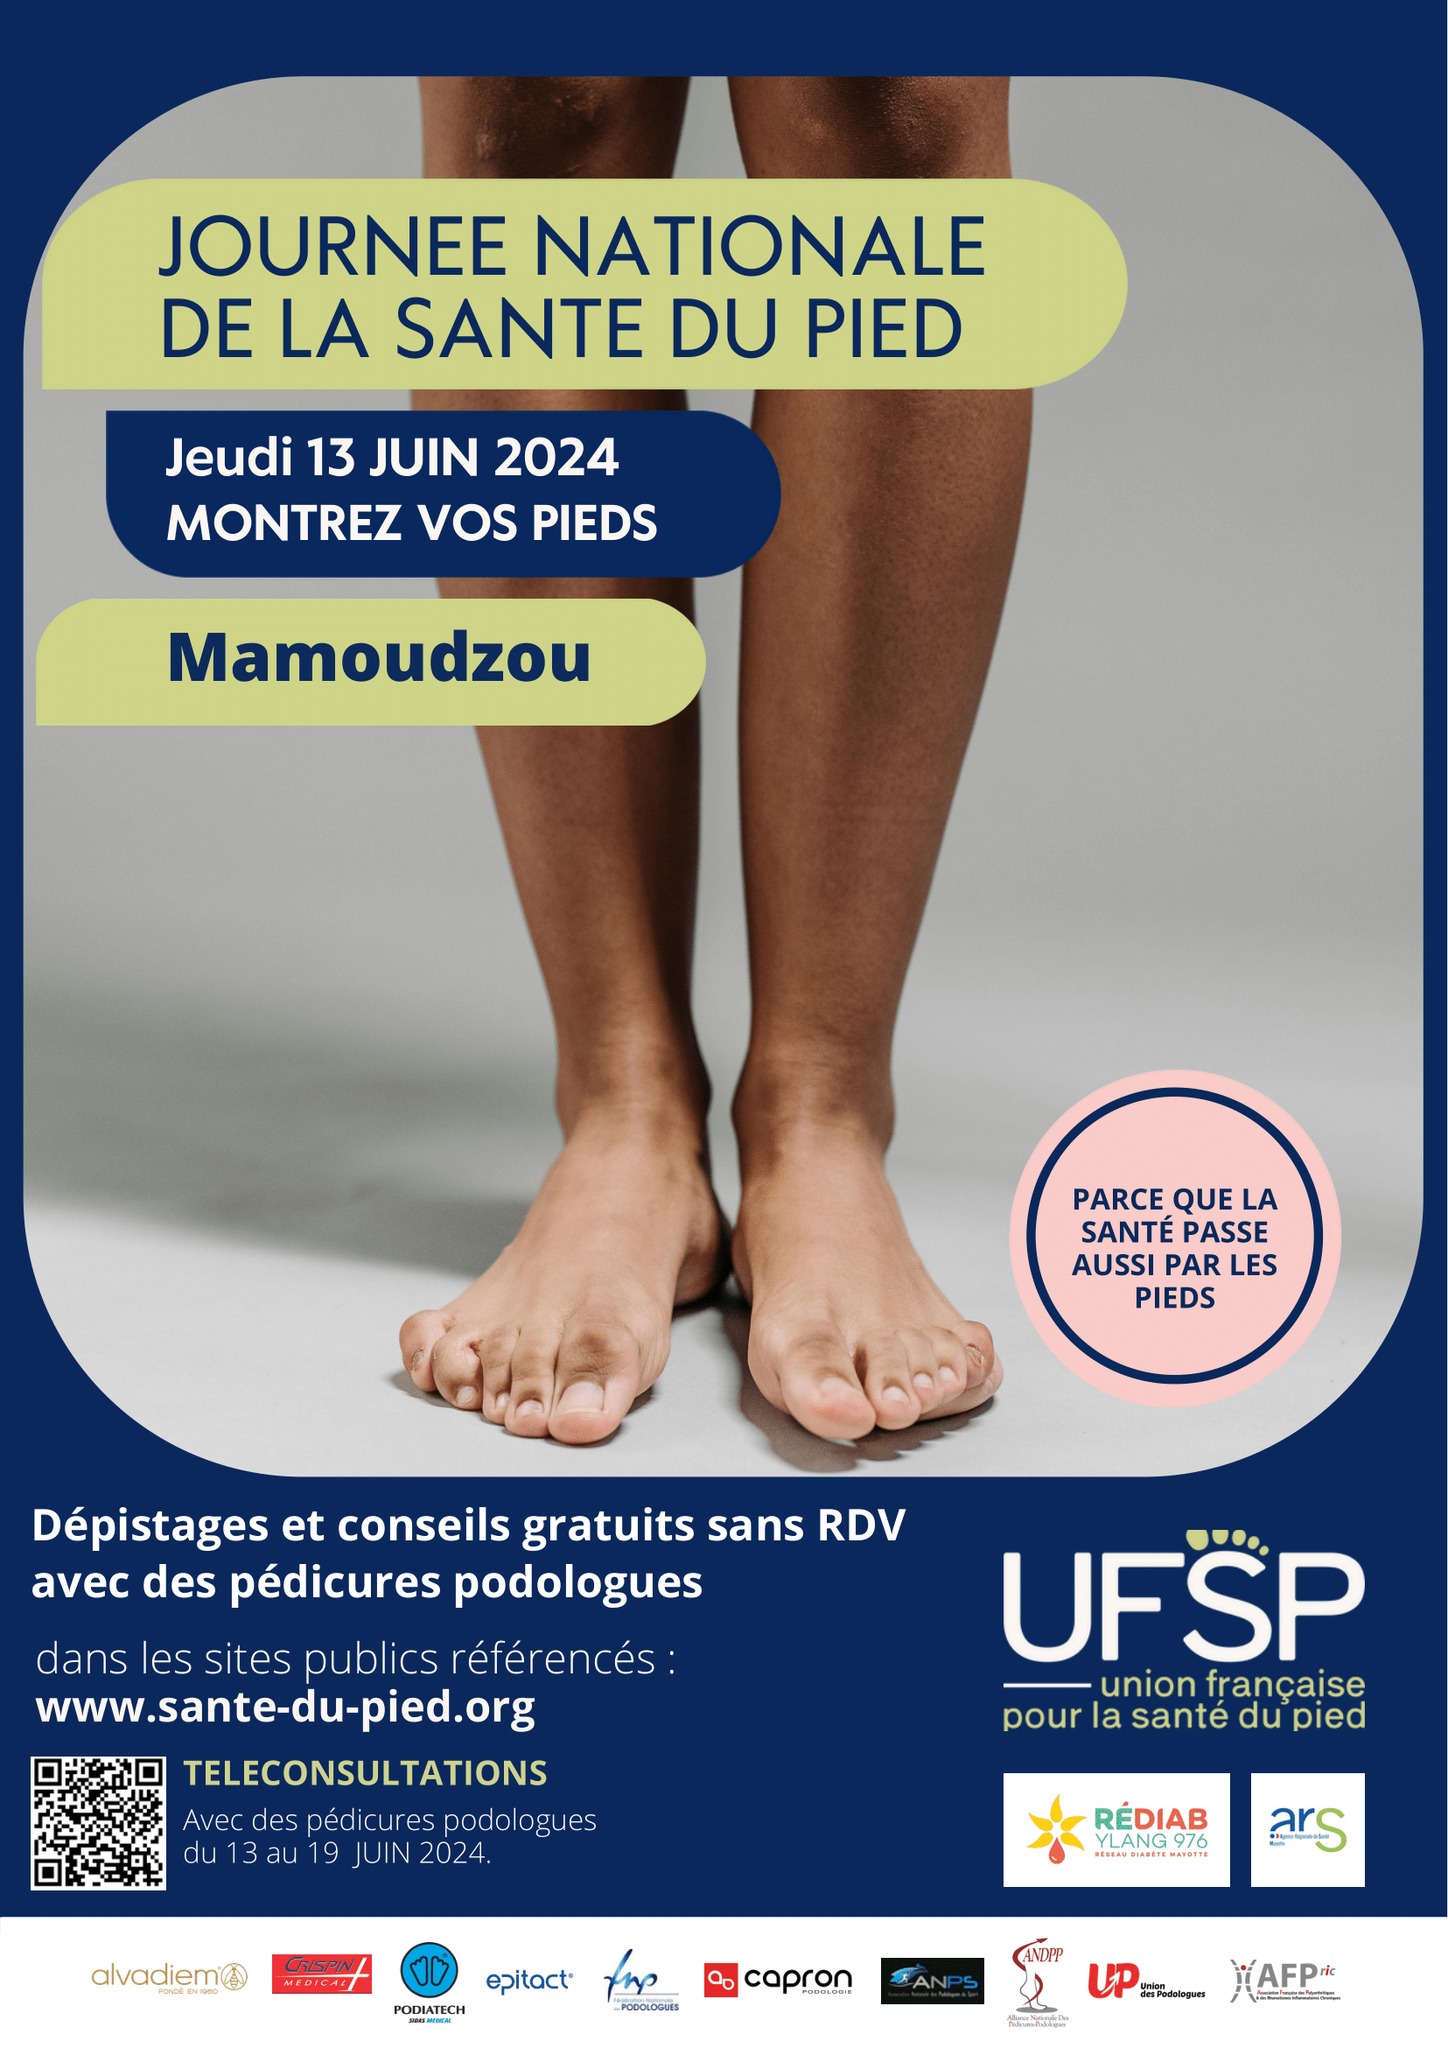 Le 13 juin, montrez vos pieds à Mamoudzou !